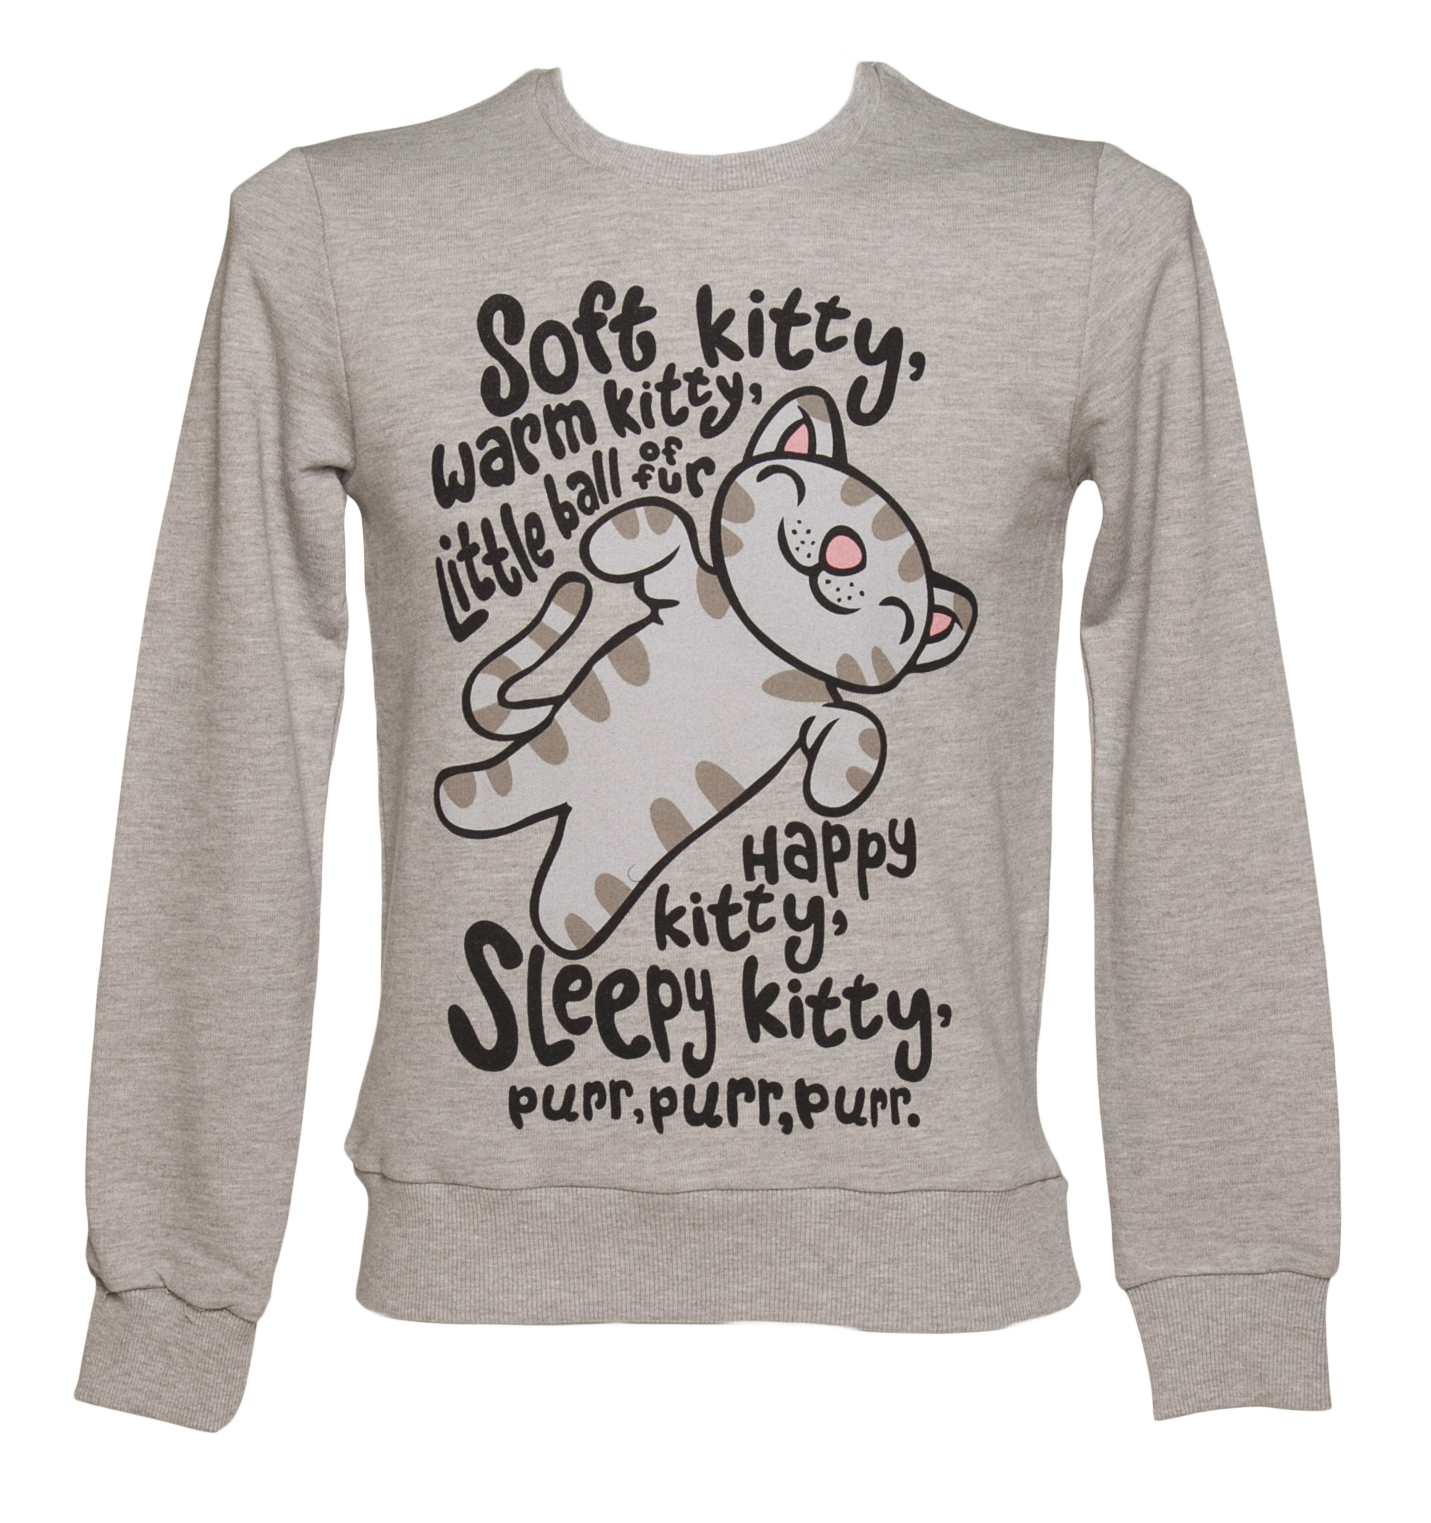 TruffleShuffle Mens Grey Big Bang Theory Soft Kitty Sweater